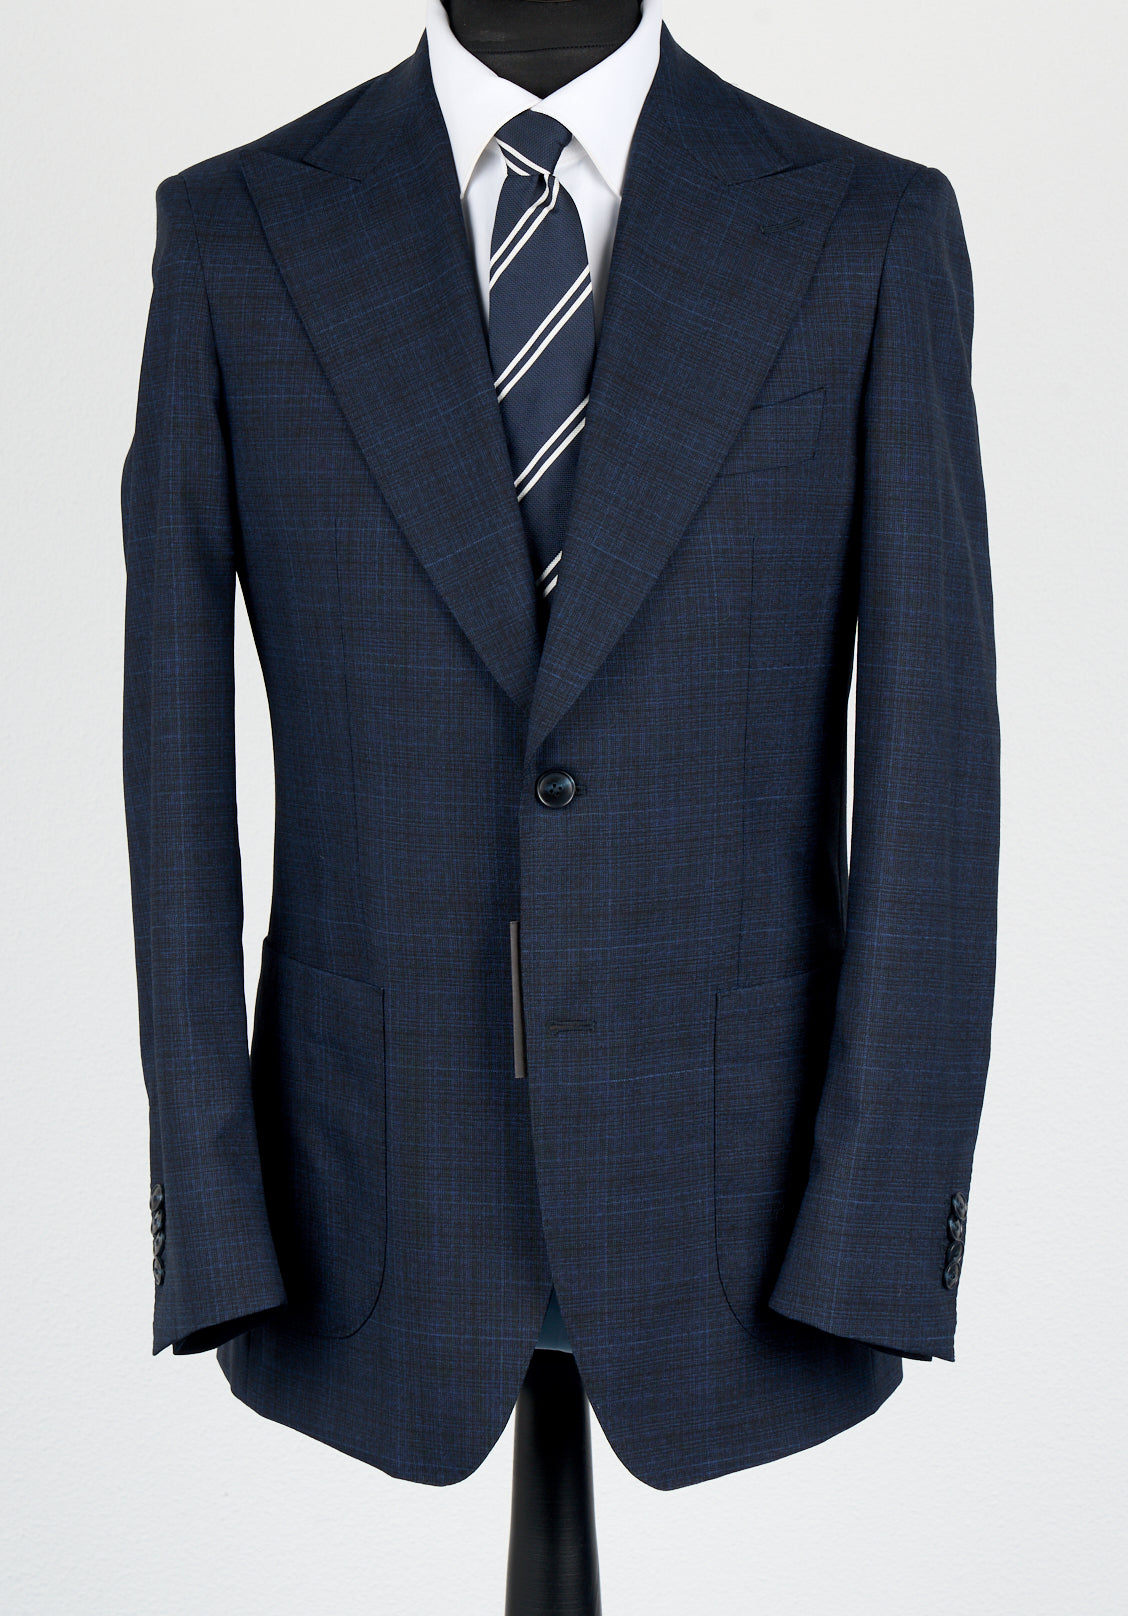 New SUITREVIEW Elmhurst Deep Blue Check 2 Ply Traveller Peak Lapel Suit - Size 36R, 38R, 40S, 42R, 44R